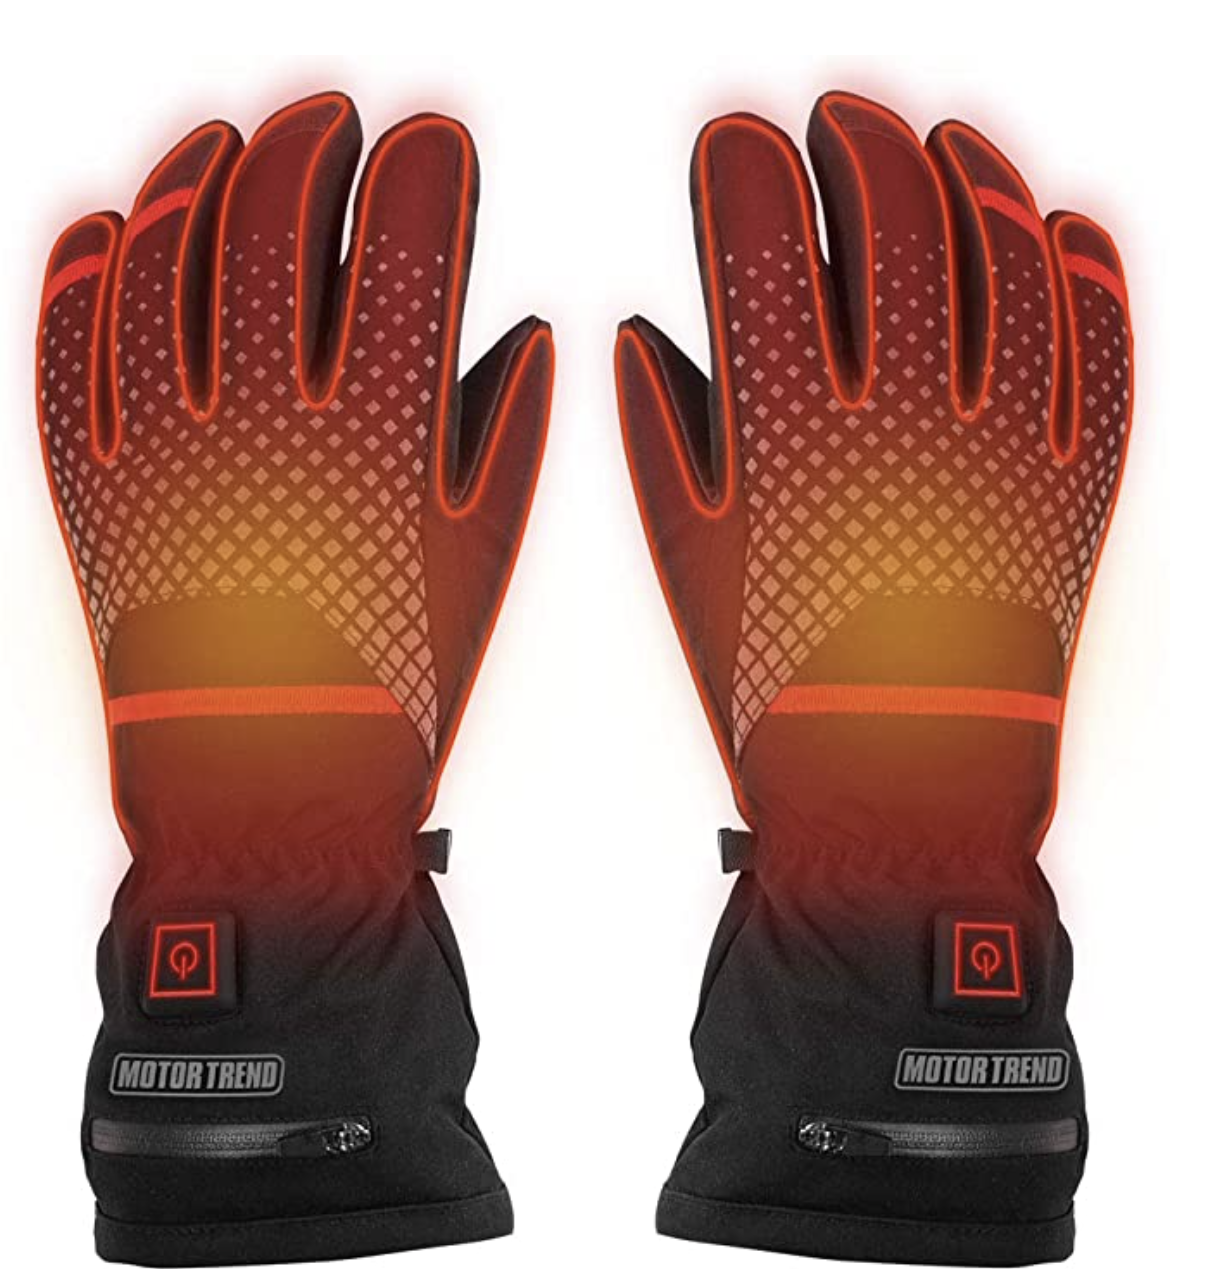 Motor Trend Max-Heat Heated Gloves - Réchauffeurs de mains rechargeables avec 3 réglages de température